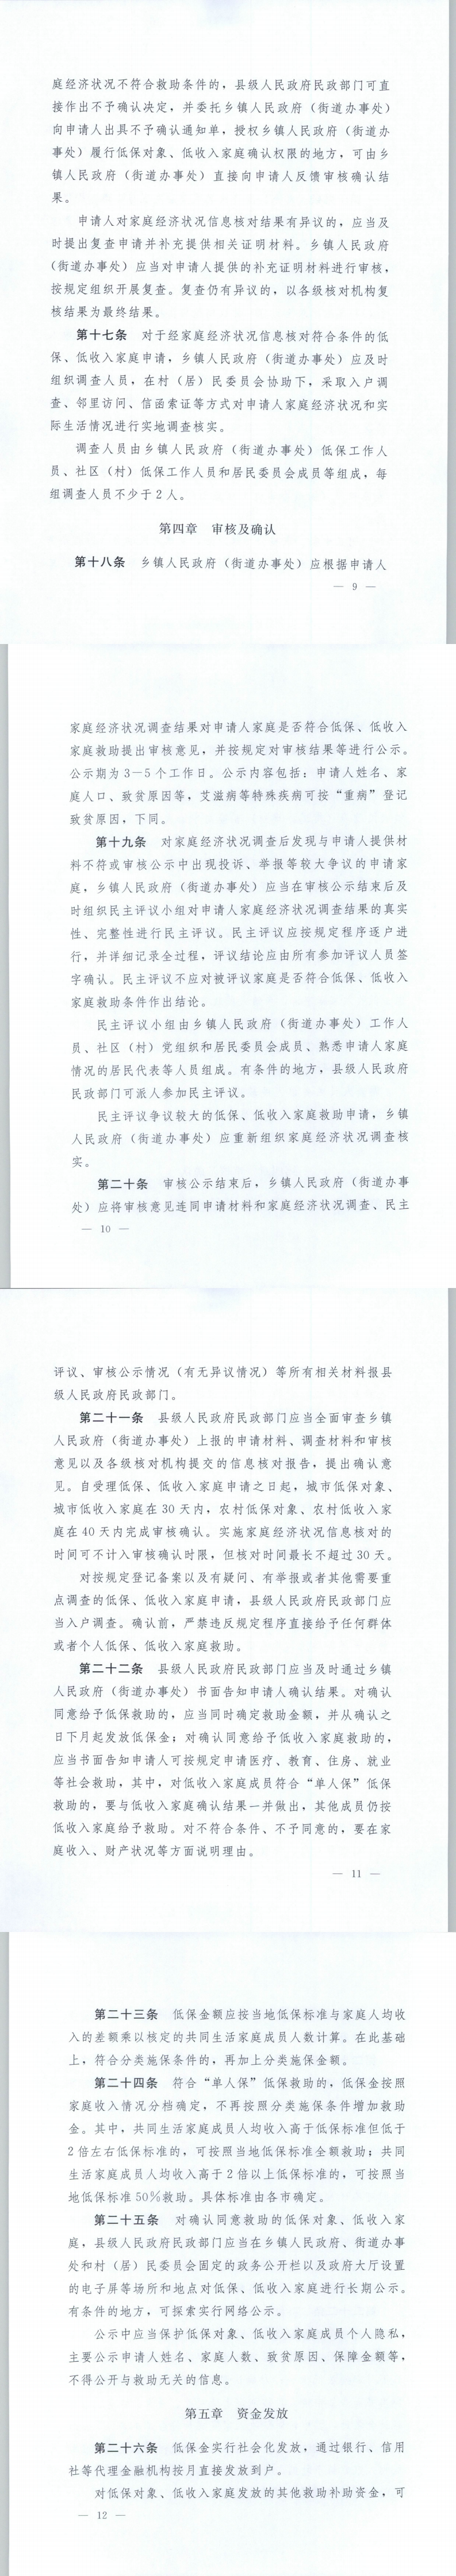 《辽宁省最低生活保障对象、低收入家庭审核确认操作规范》的通知3.png